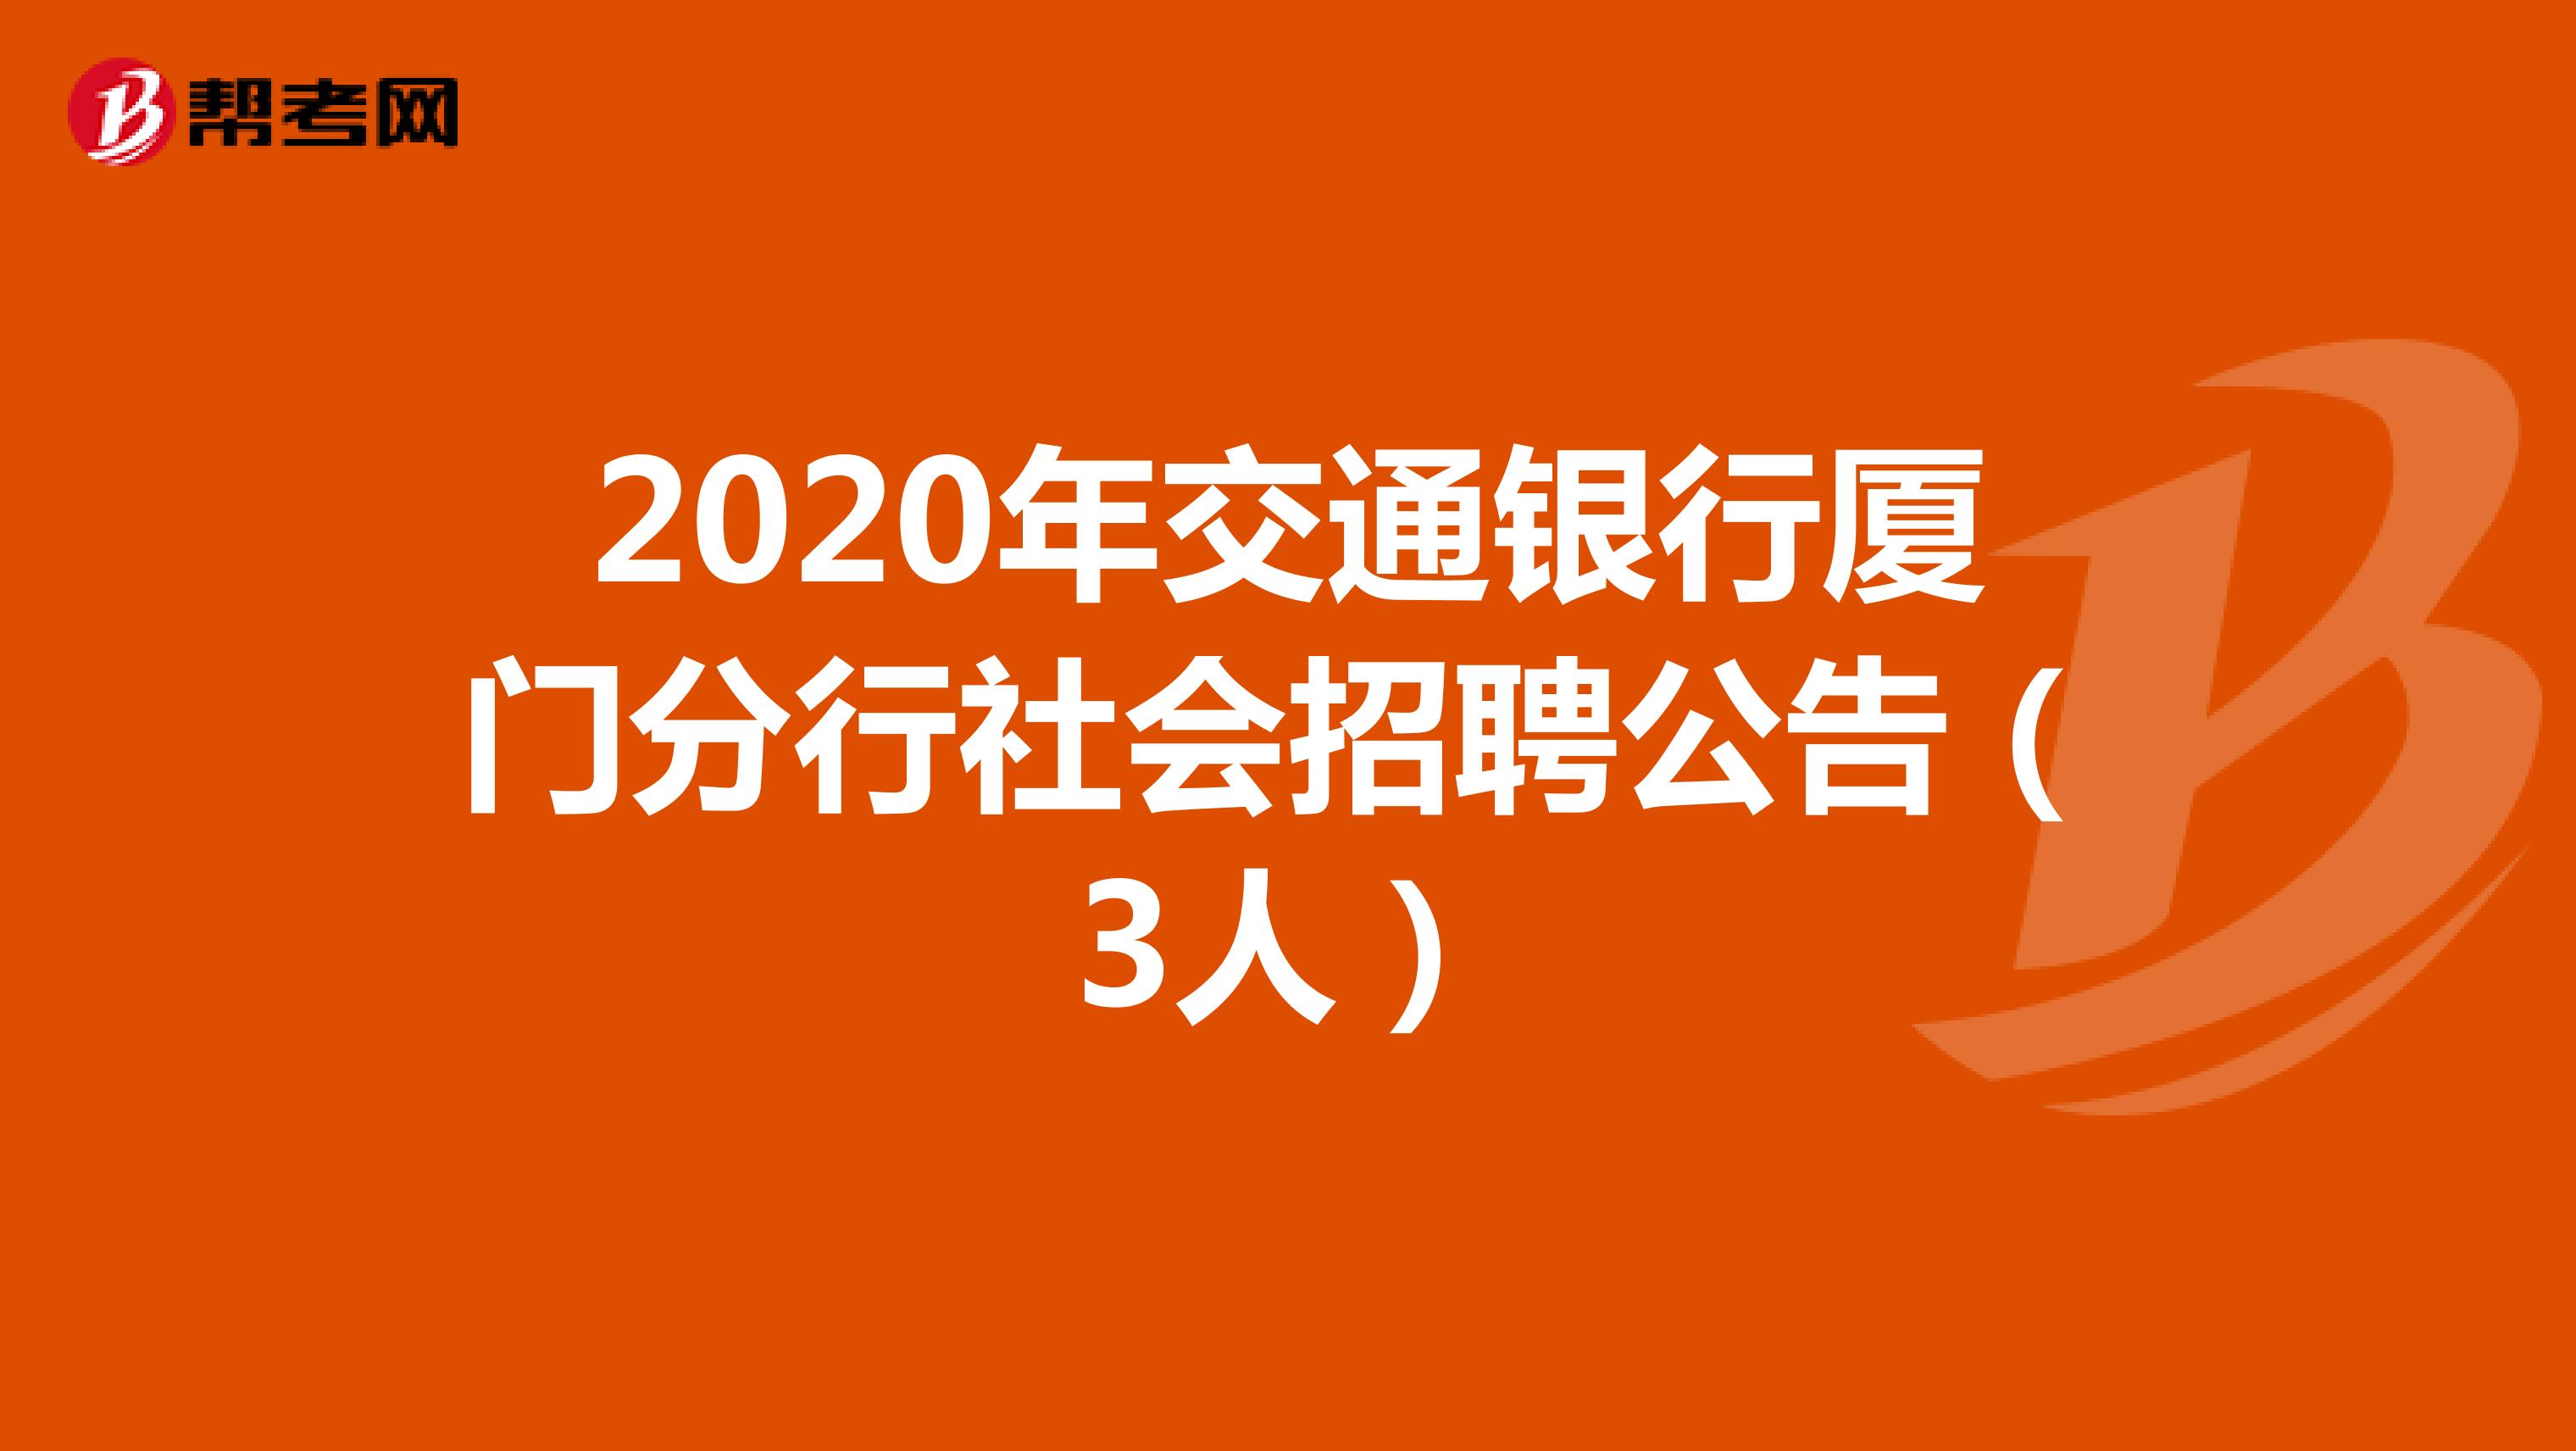 2020年交通银行厦门分行社会招聘公告（3人）